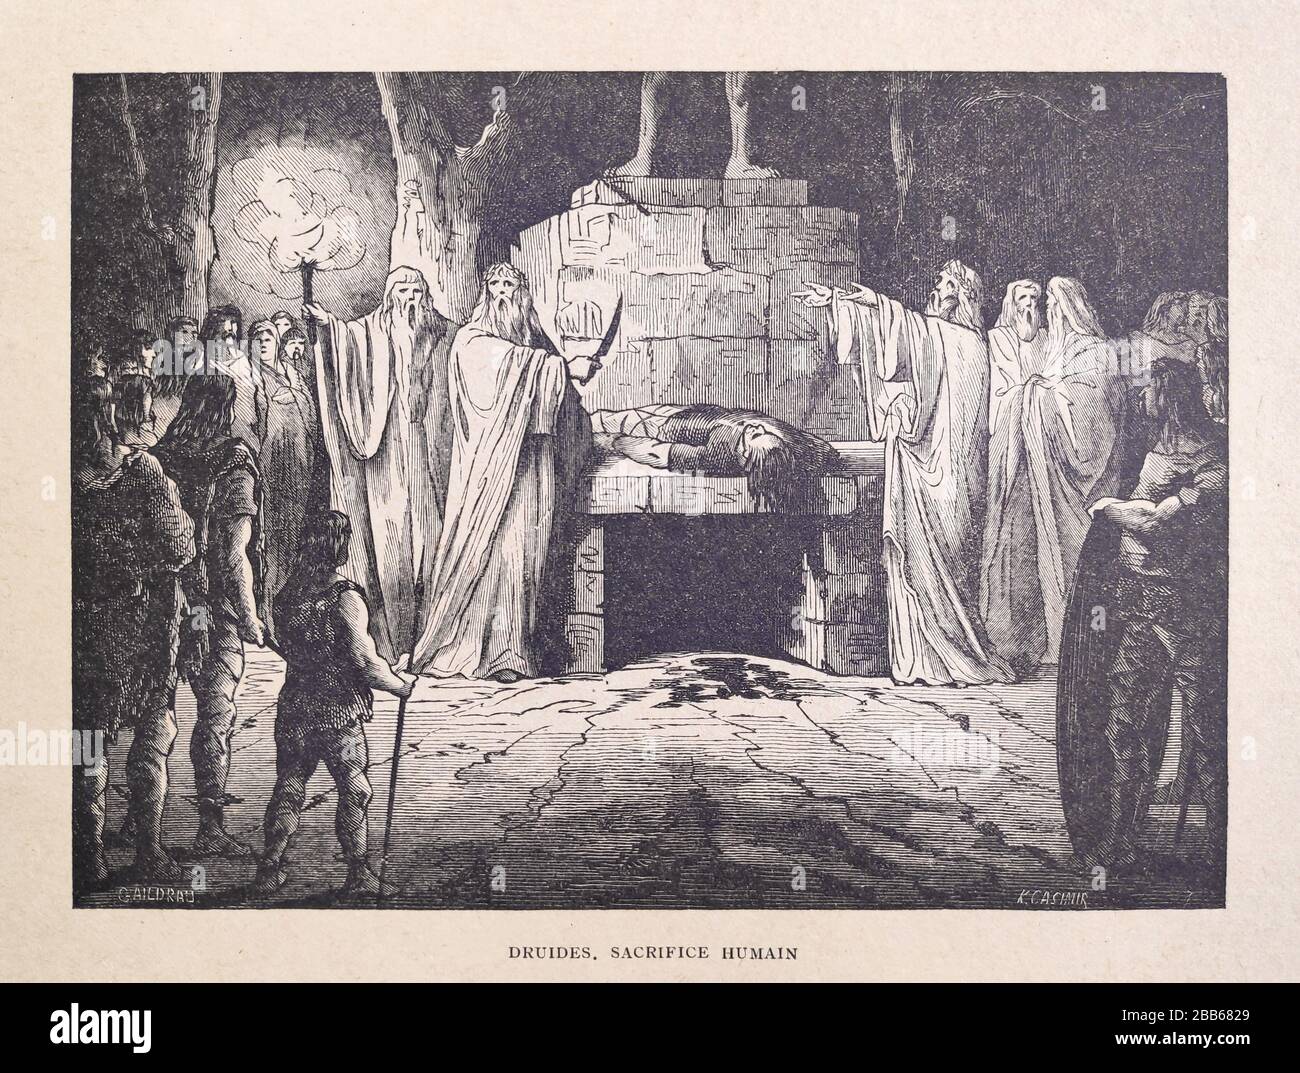 Illustrazione di un druidi praticante sacrificio umano di Jules Gaidrau e inciso da K. Casimir stampato alla fine del 19th secolo. Foto Stock